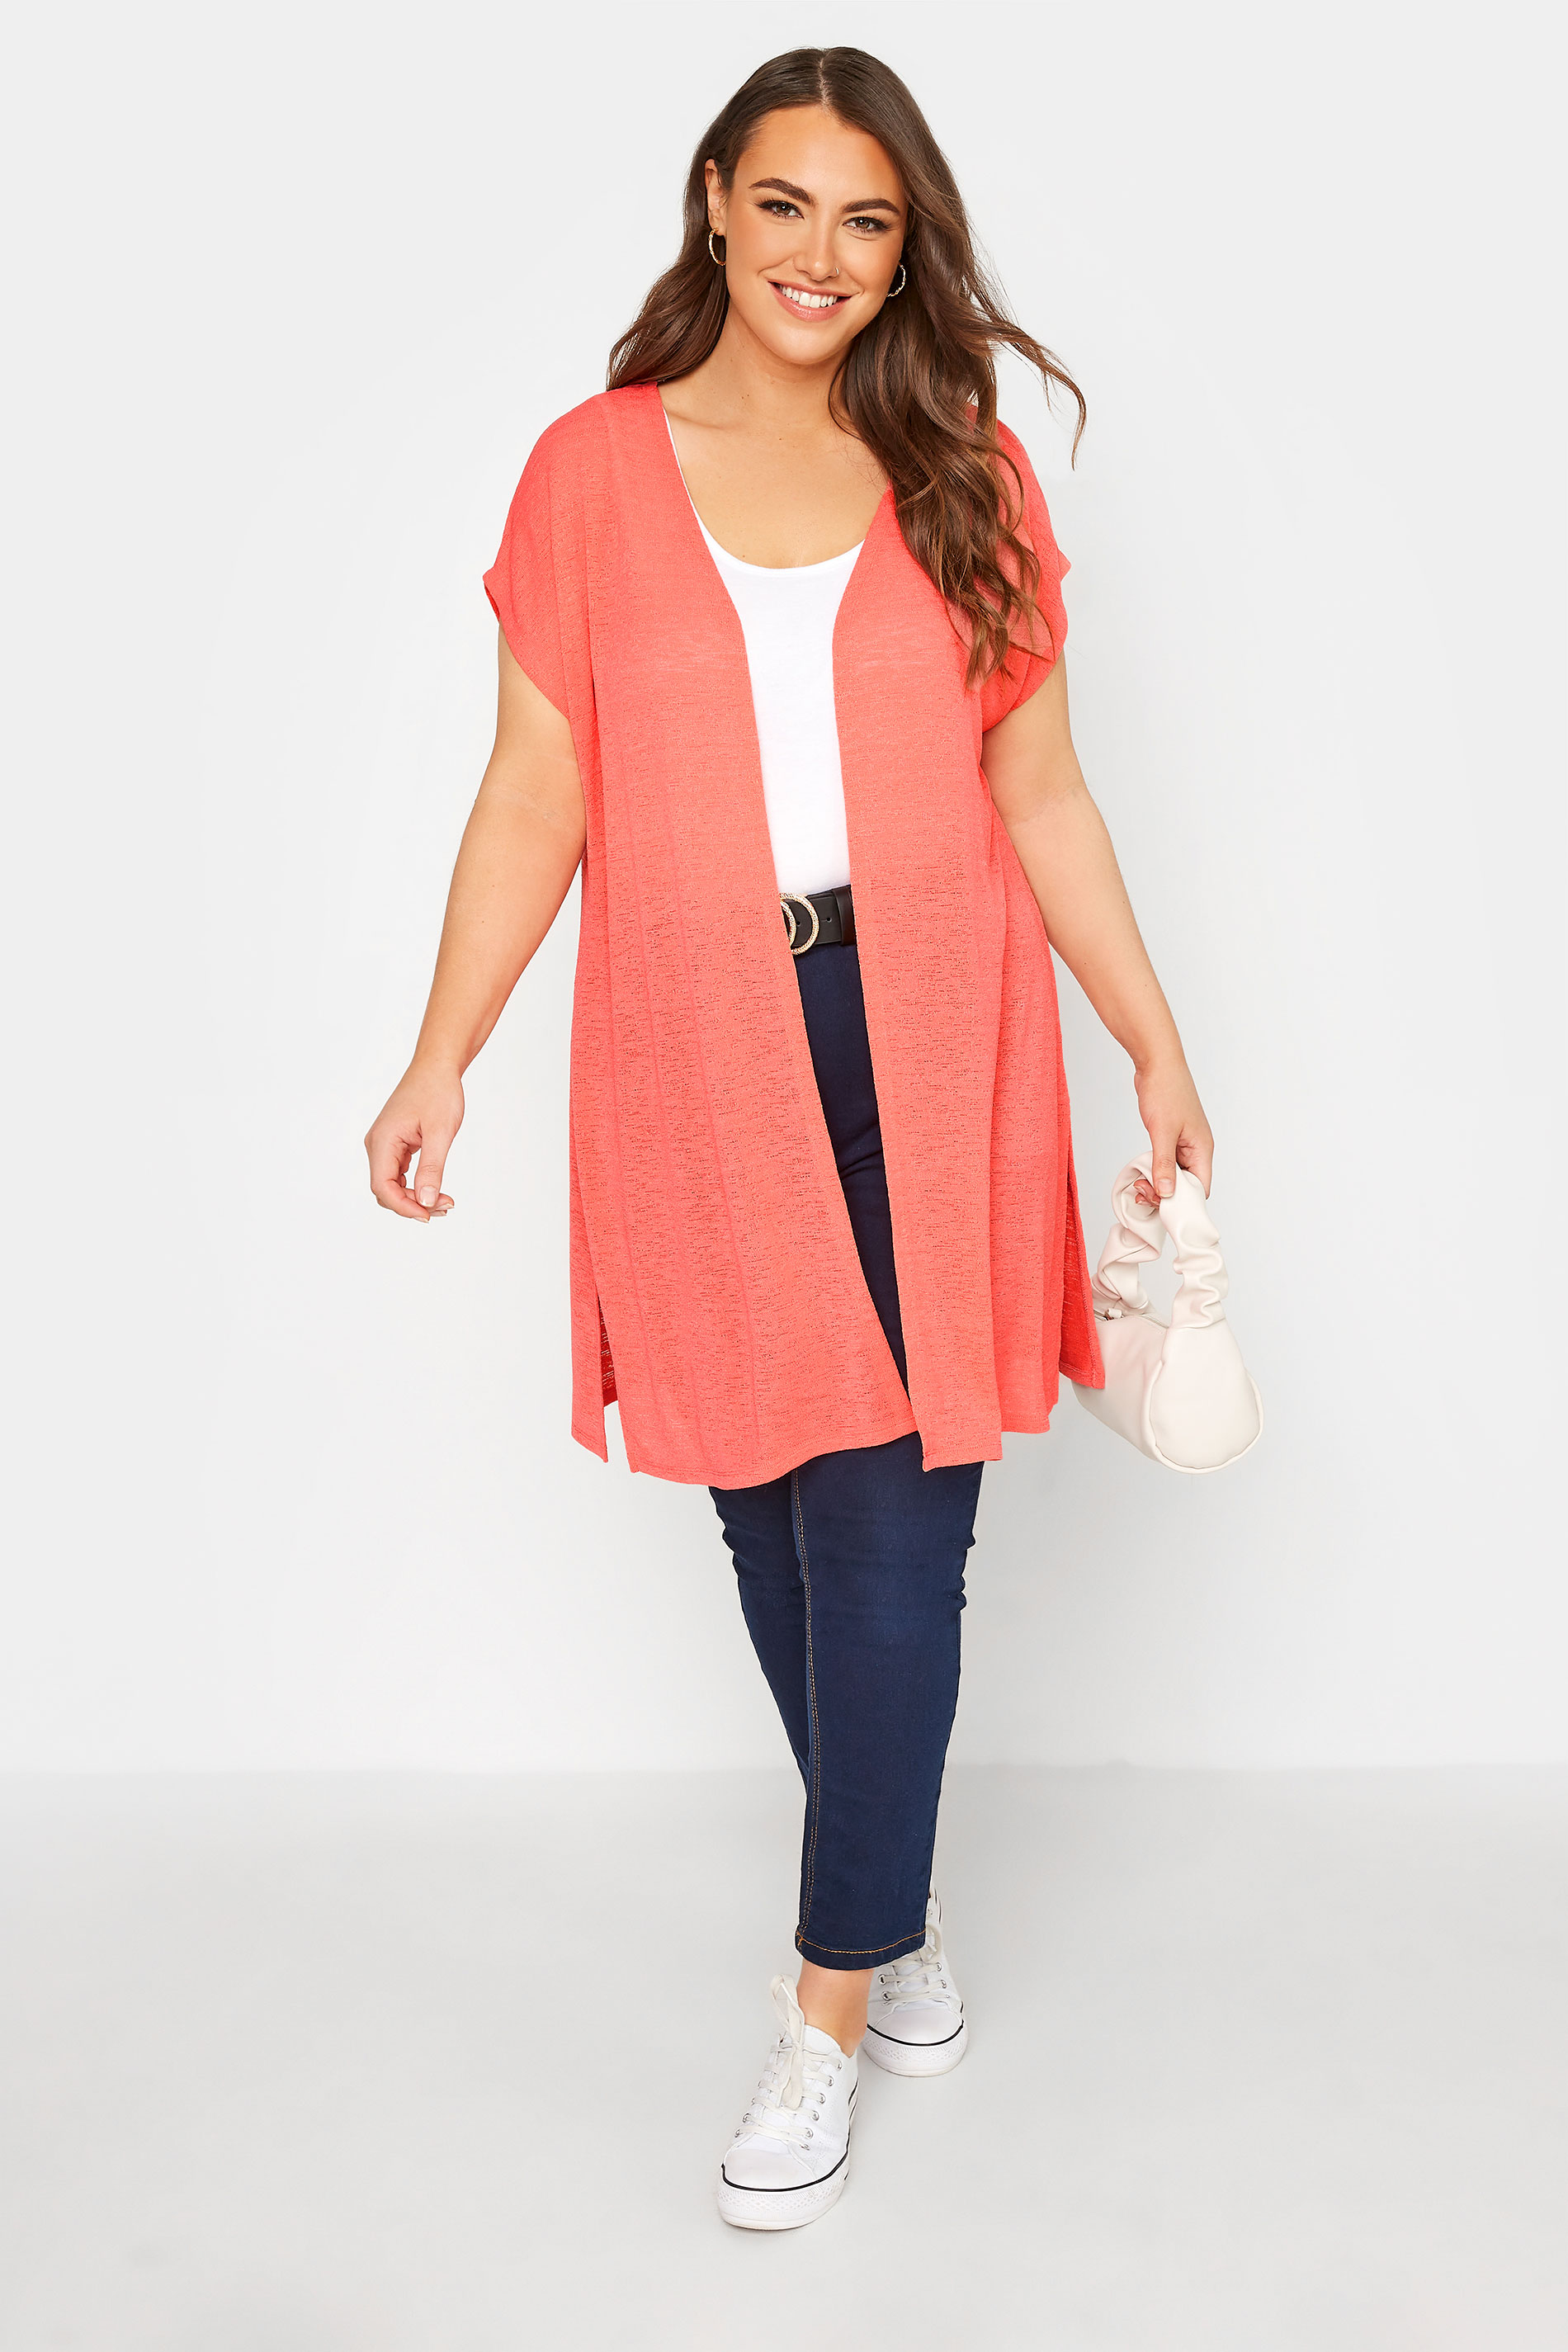 Plus Size Coral Orange Short Sleeve Cardigan | Yours Clothing 2